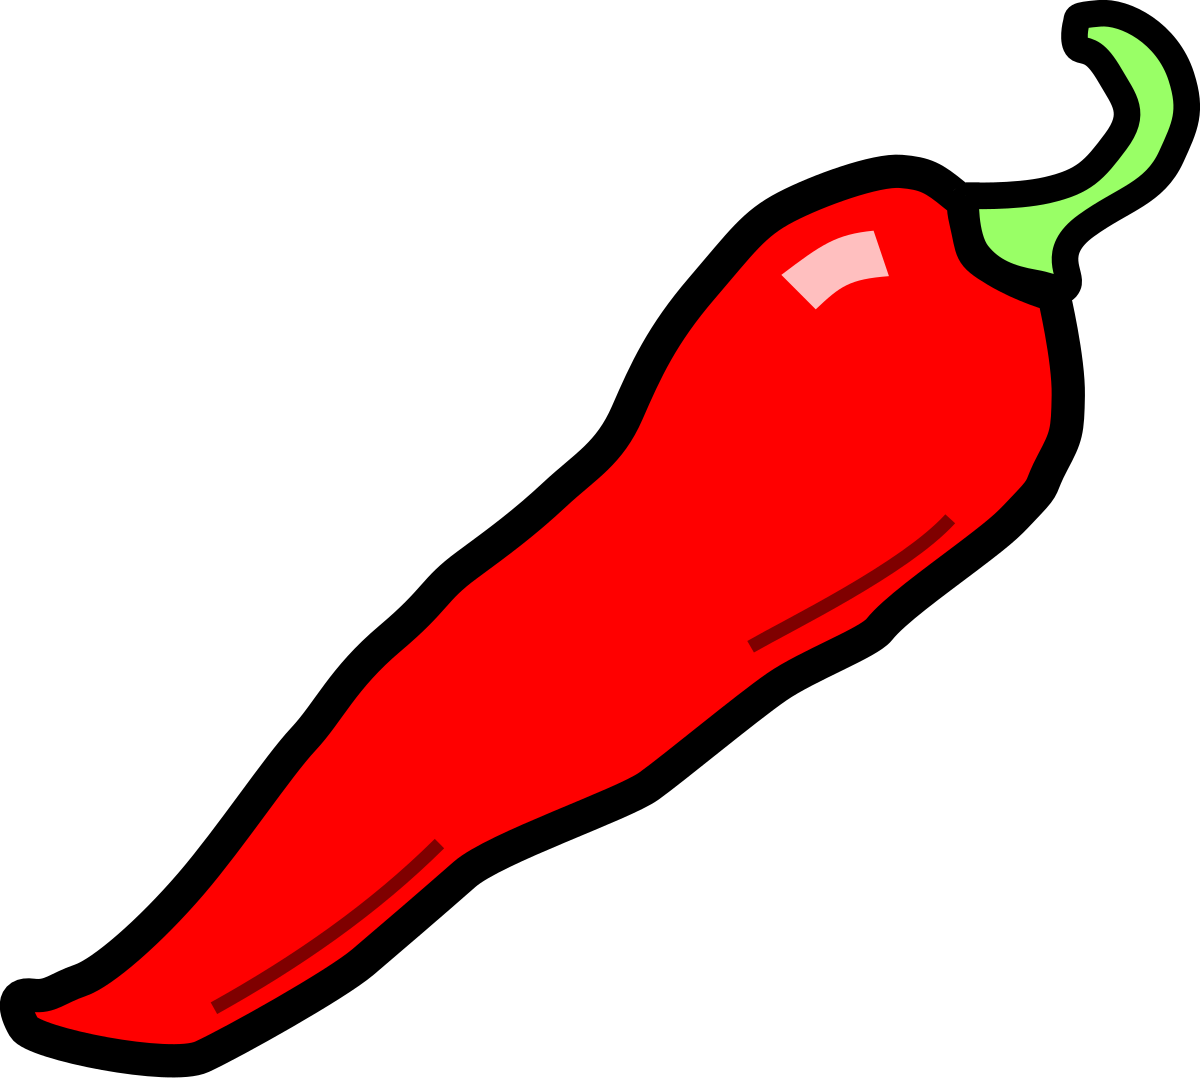 File:Chilli pepper 4.svg - Wikipedia